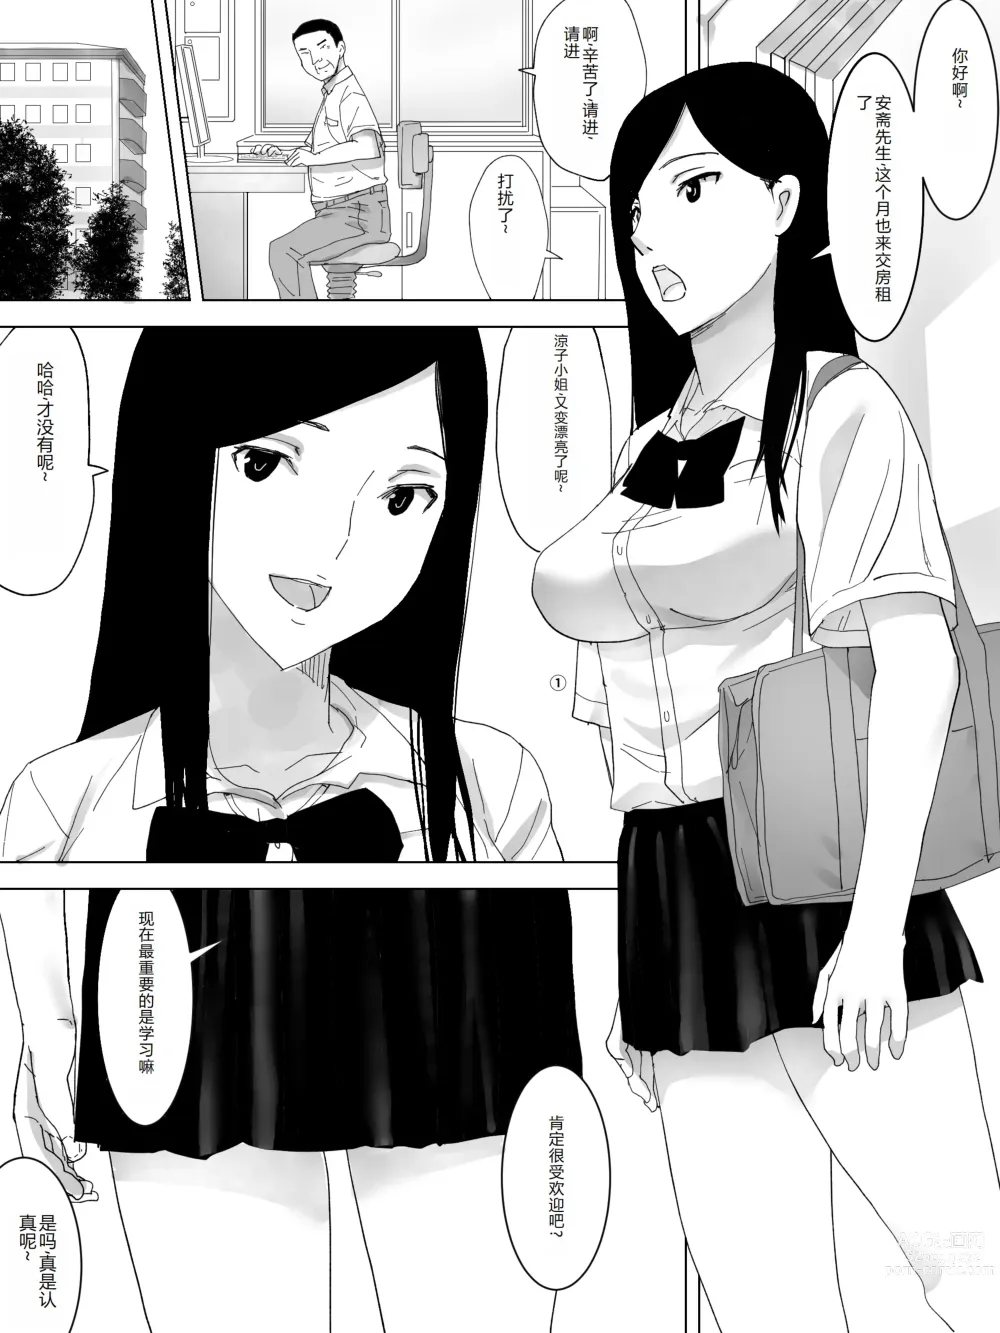 Page 2 of doujinshi Hentai Kanrinin